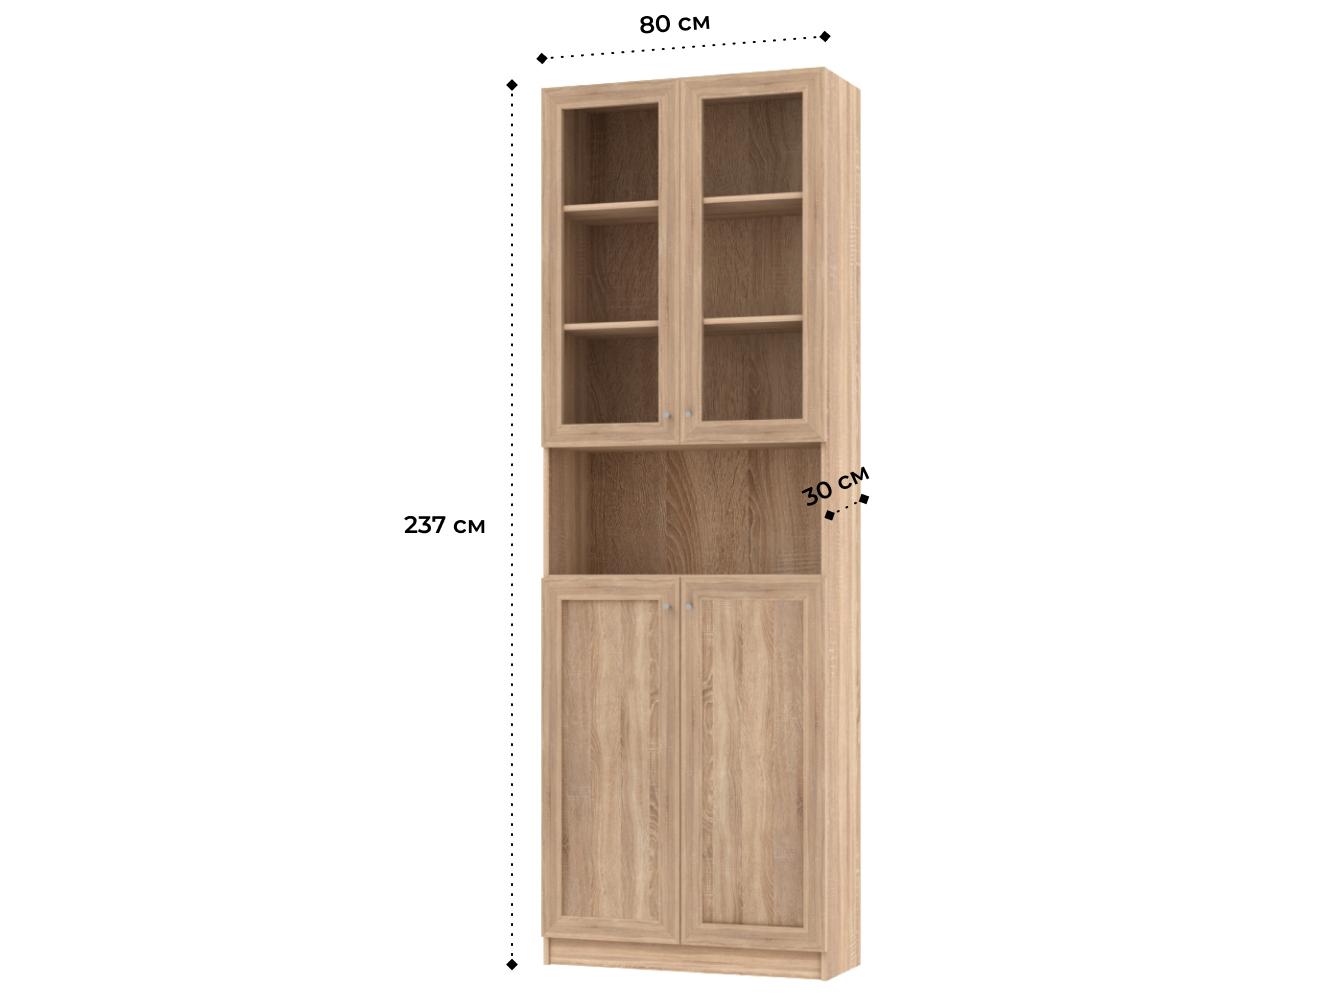 Книжный шкаф Билли 333 light beige ИКЕА (IKEA) изображение товара